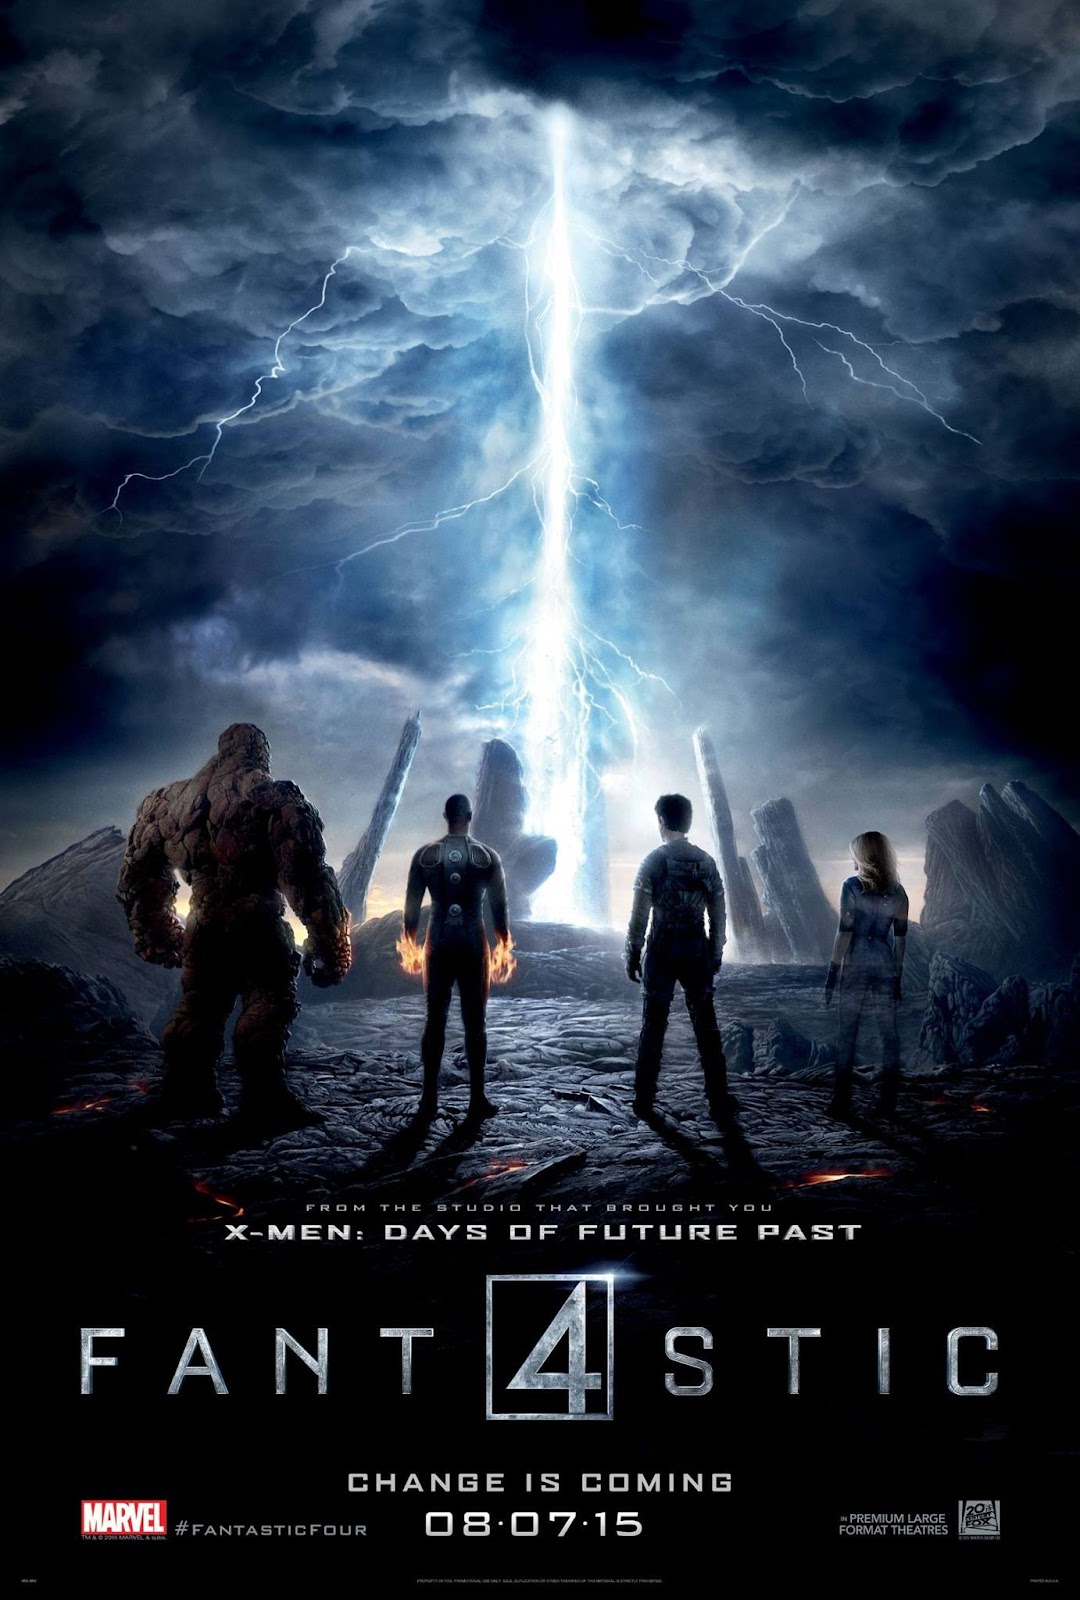 ｃｉａ こちら映画中央情報局です The Fantastic Four ジョシュ トランク監督のコミックヒーロー 映画 ファンタスティック フォー が 4人のヒーローたちの特殊能力を描き足した新しいポスターをリリース